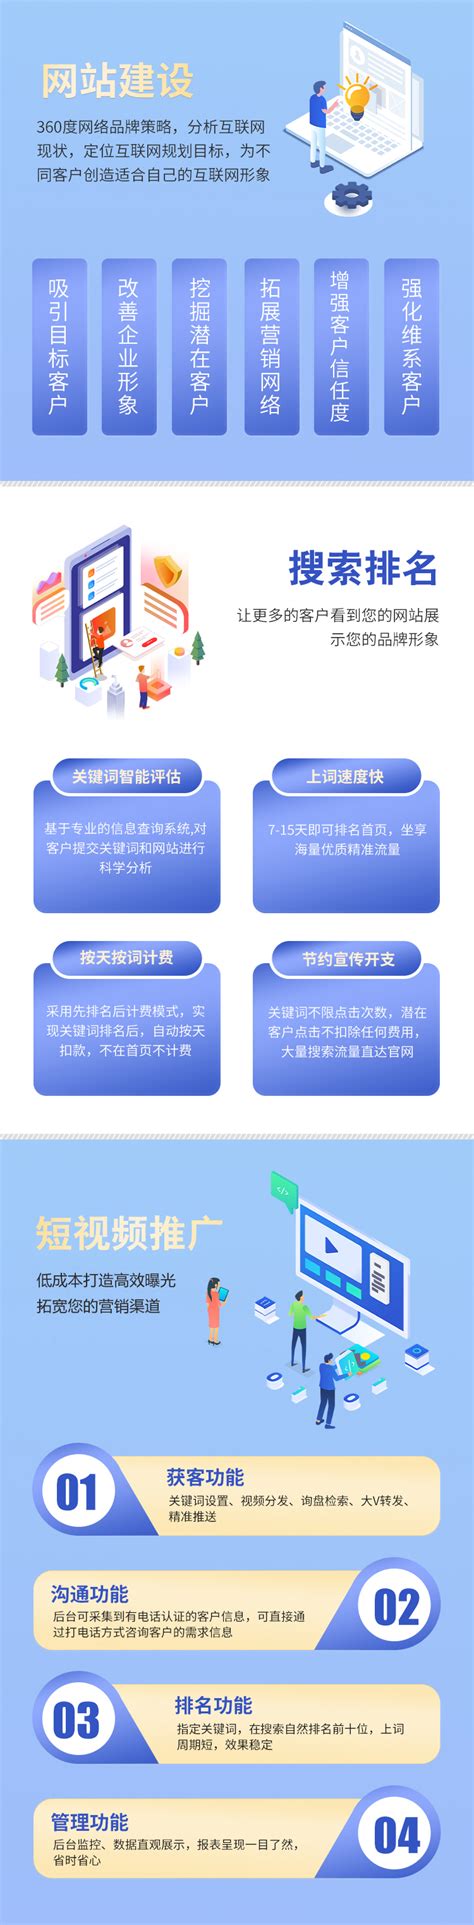 重庆网站建设总结